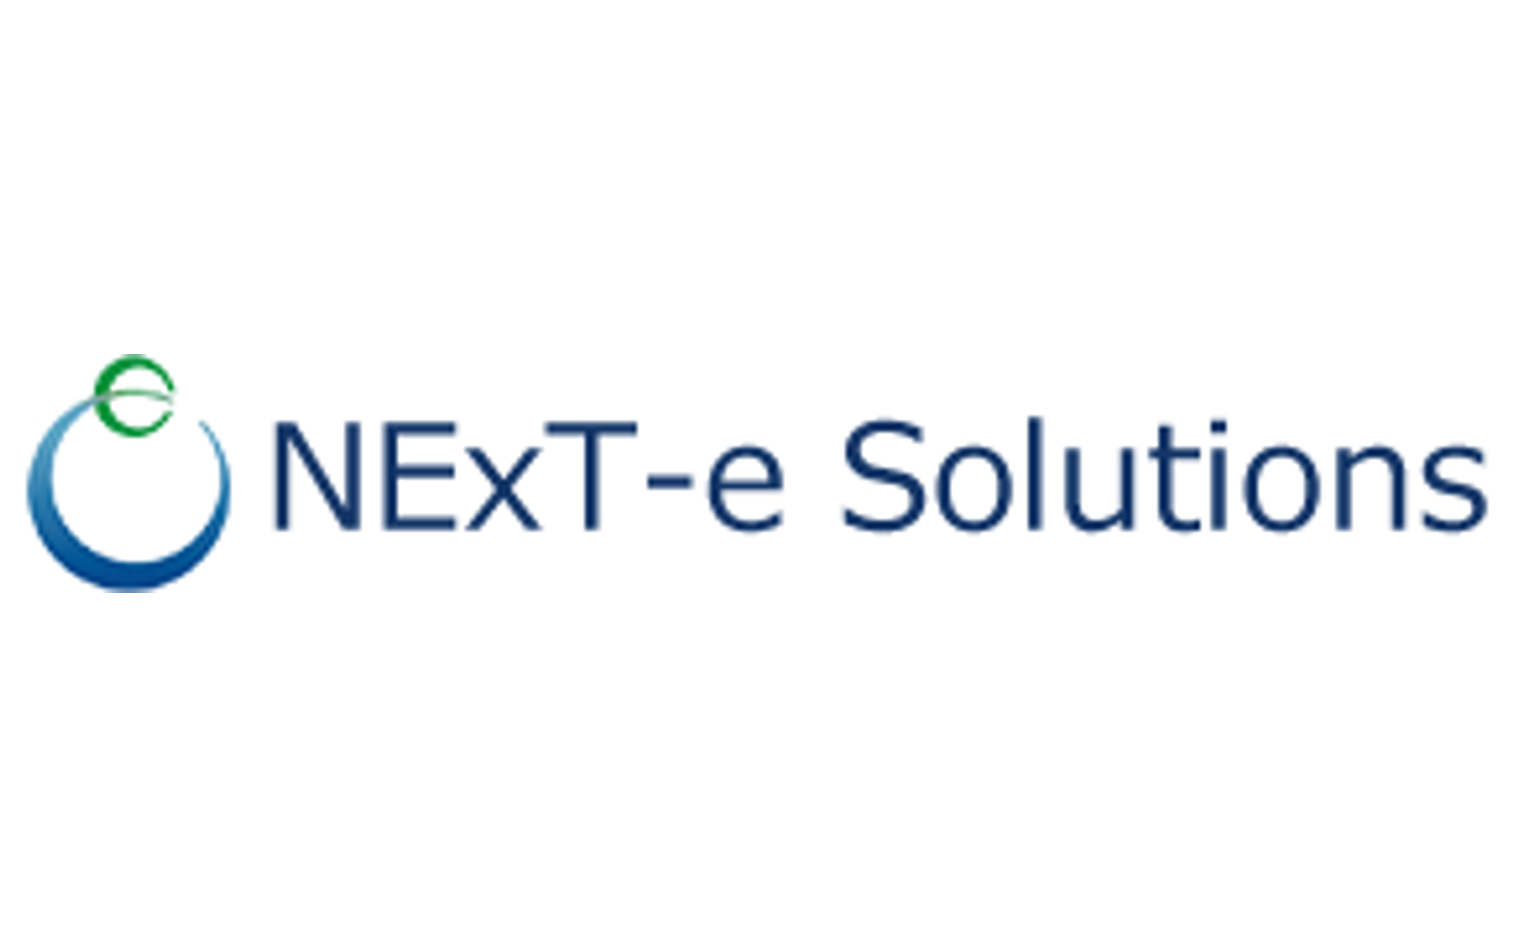 NExT-e Solutions